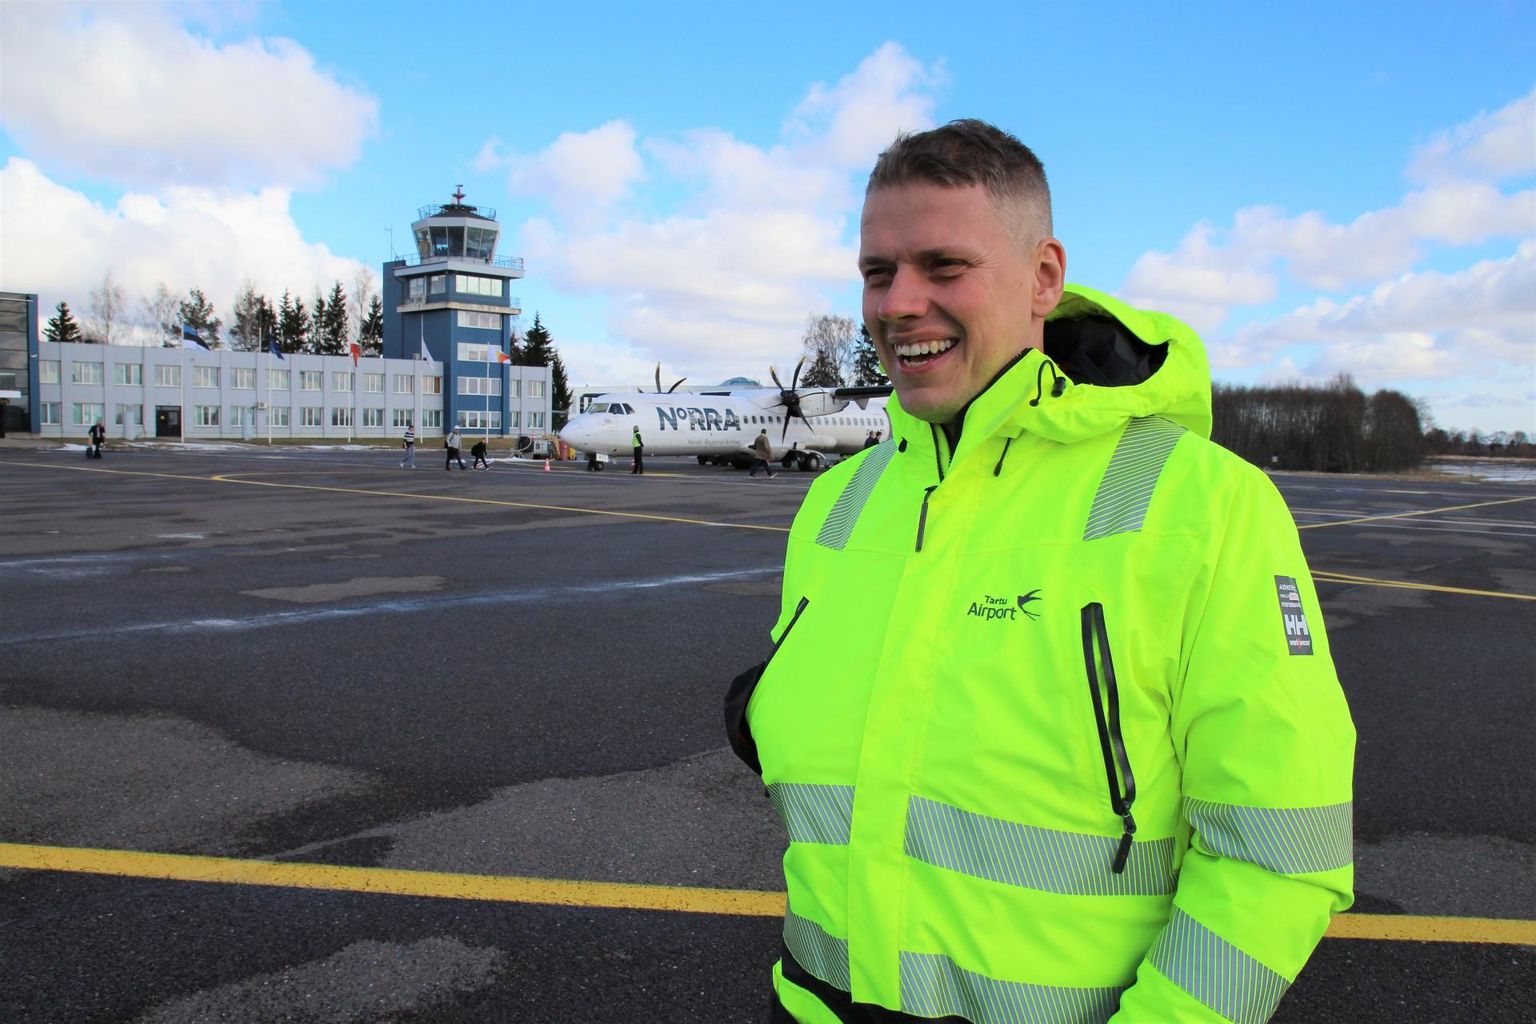 Head võimalused Tartu volikogu revisjonikomisjoni esimeheks tõusta on Argo Annukil, kes on olnud Tartu abilinnapea, samuti on ta pidanud Tartu lennujaama juhataja ametit.